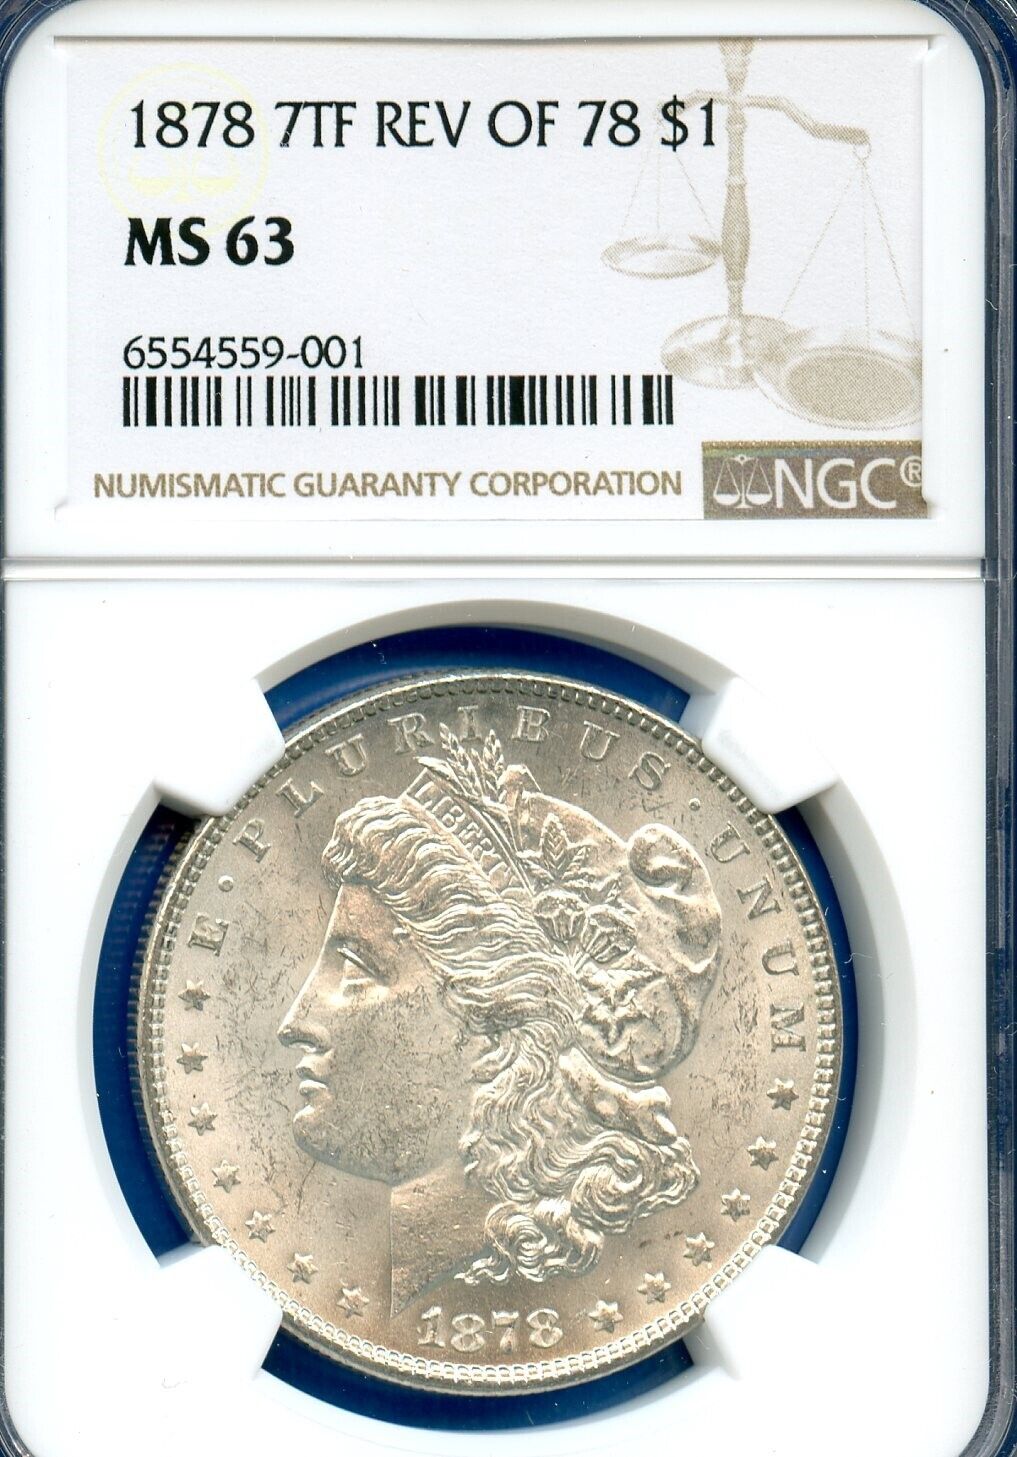 1878 P NGC MS63 7TF Rev 78 Morgan Silver Dollar $1 1878-P 7TF MS-63 Rev of 78